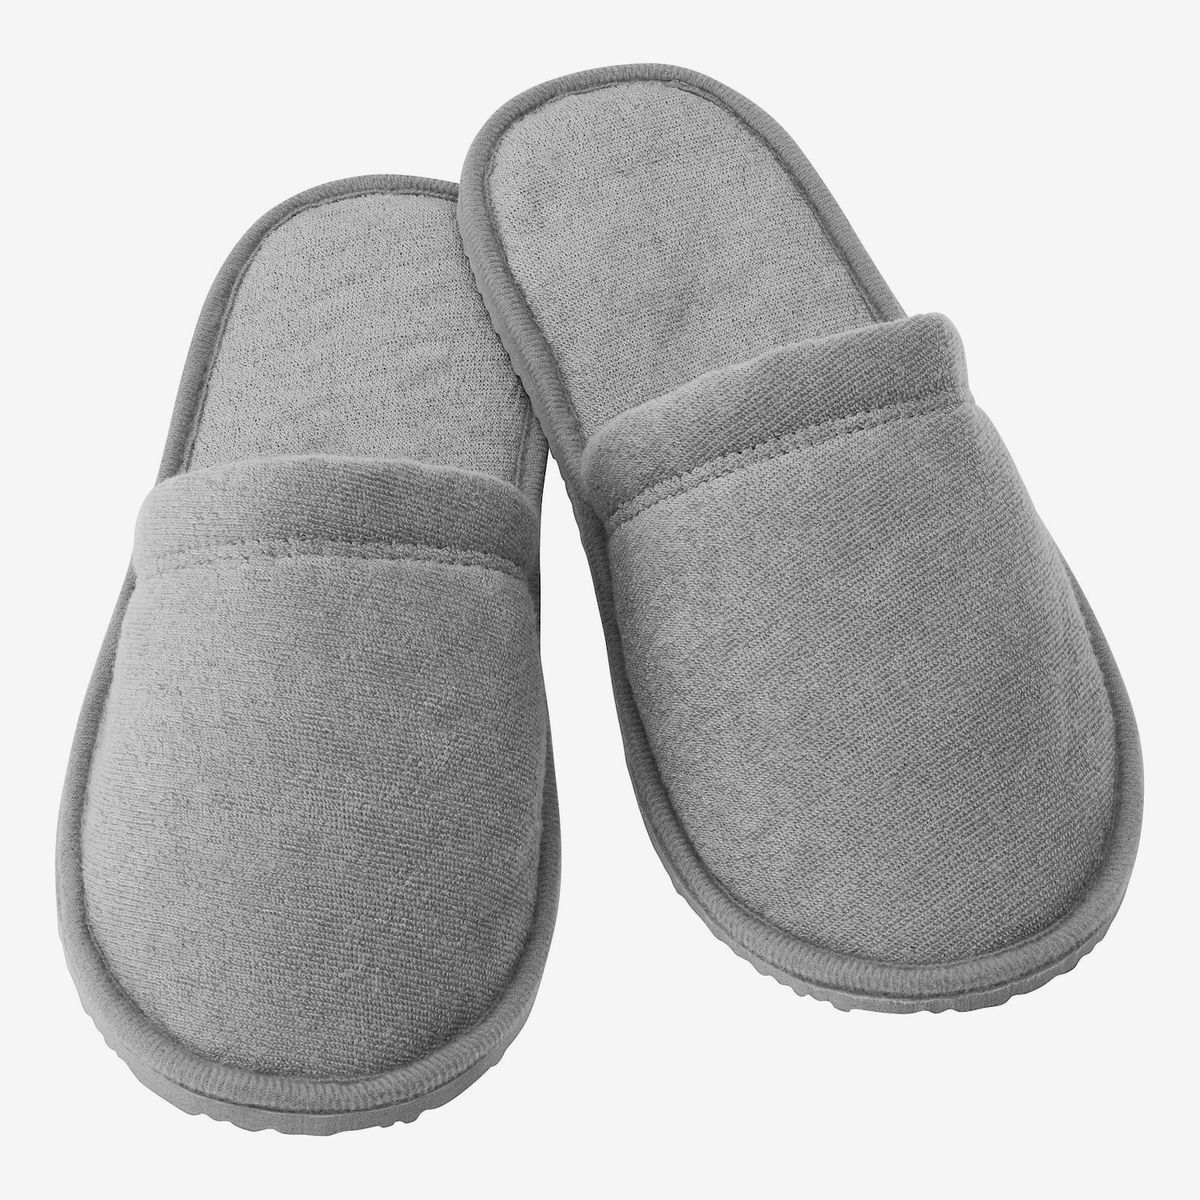 Slippers for ladies Sewwandi  උඩරටcom  UdarataCom